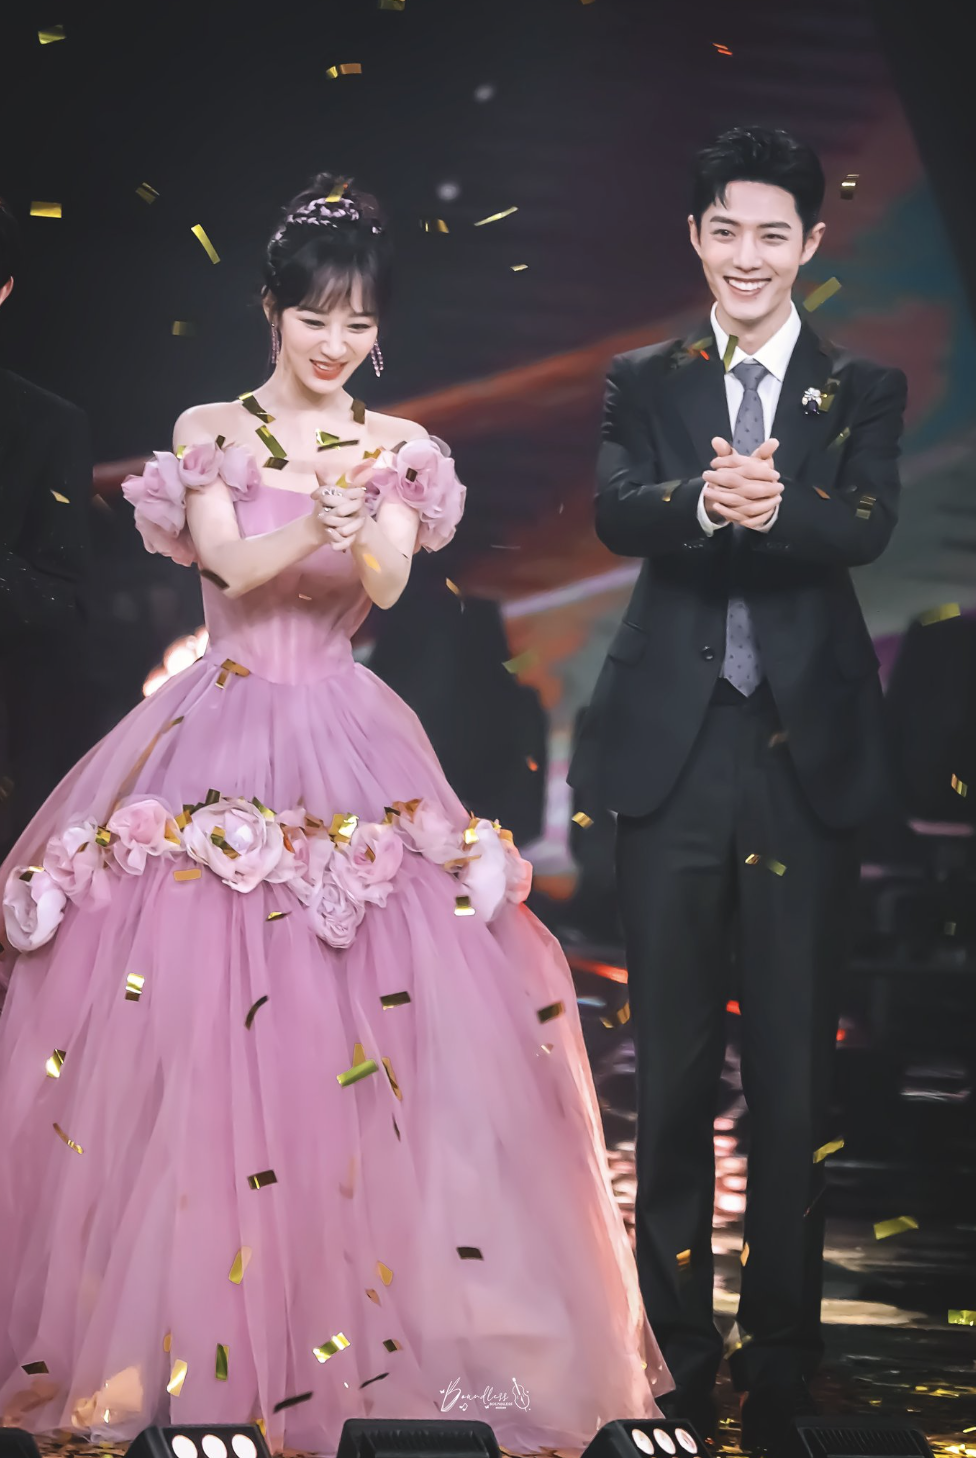  Tiêu Chiến và Dương Tử trở thành King & Queen tại Đêm hội Weibo 2020 bởi thành công của bộ phim "Dư sinh xin chỉ giáo nhiều hơn"